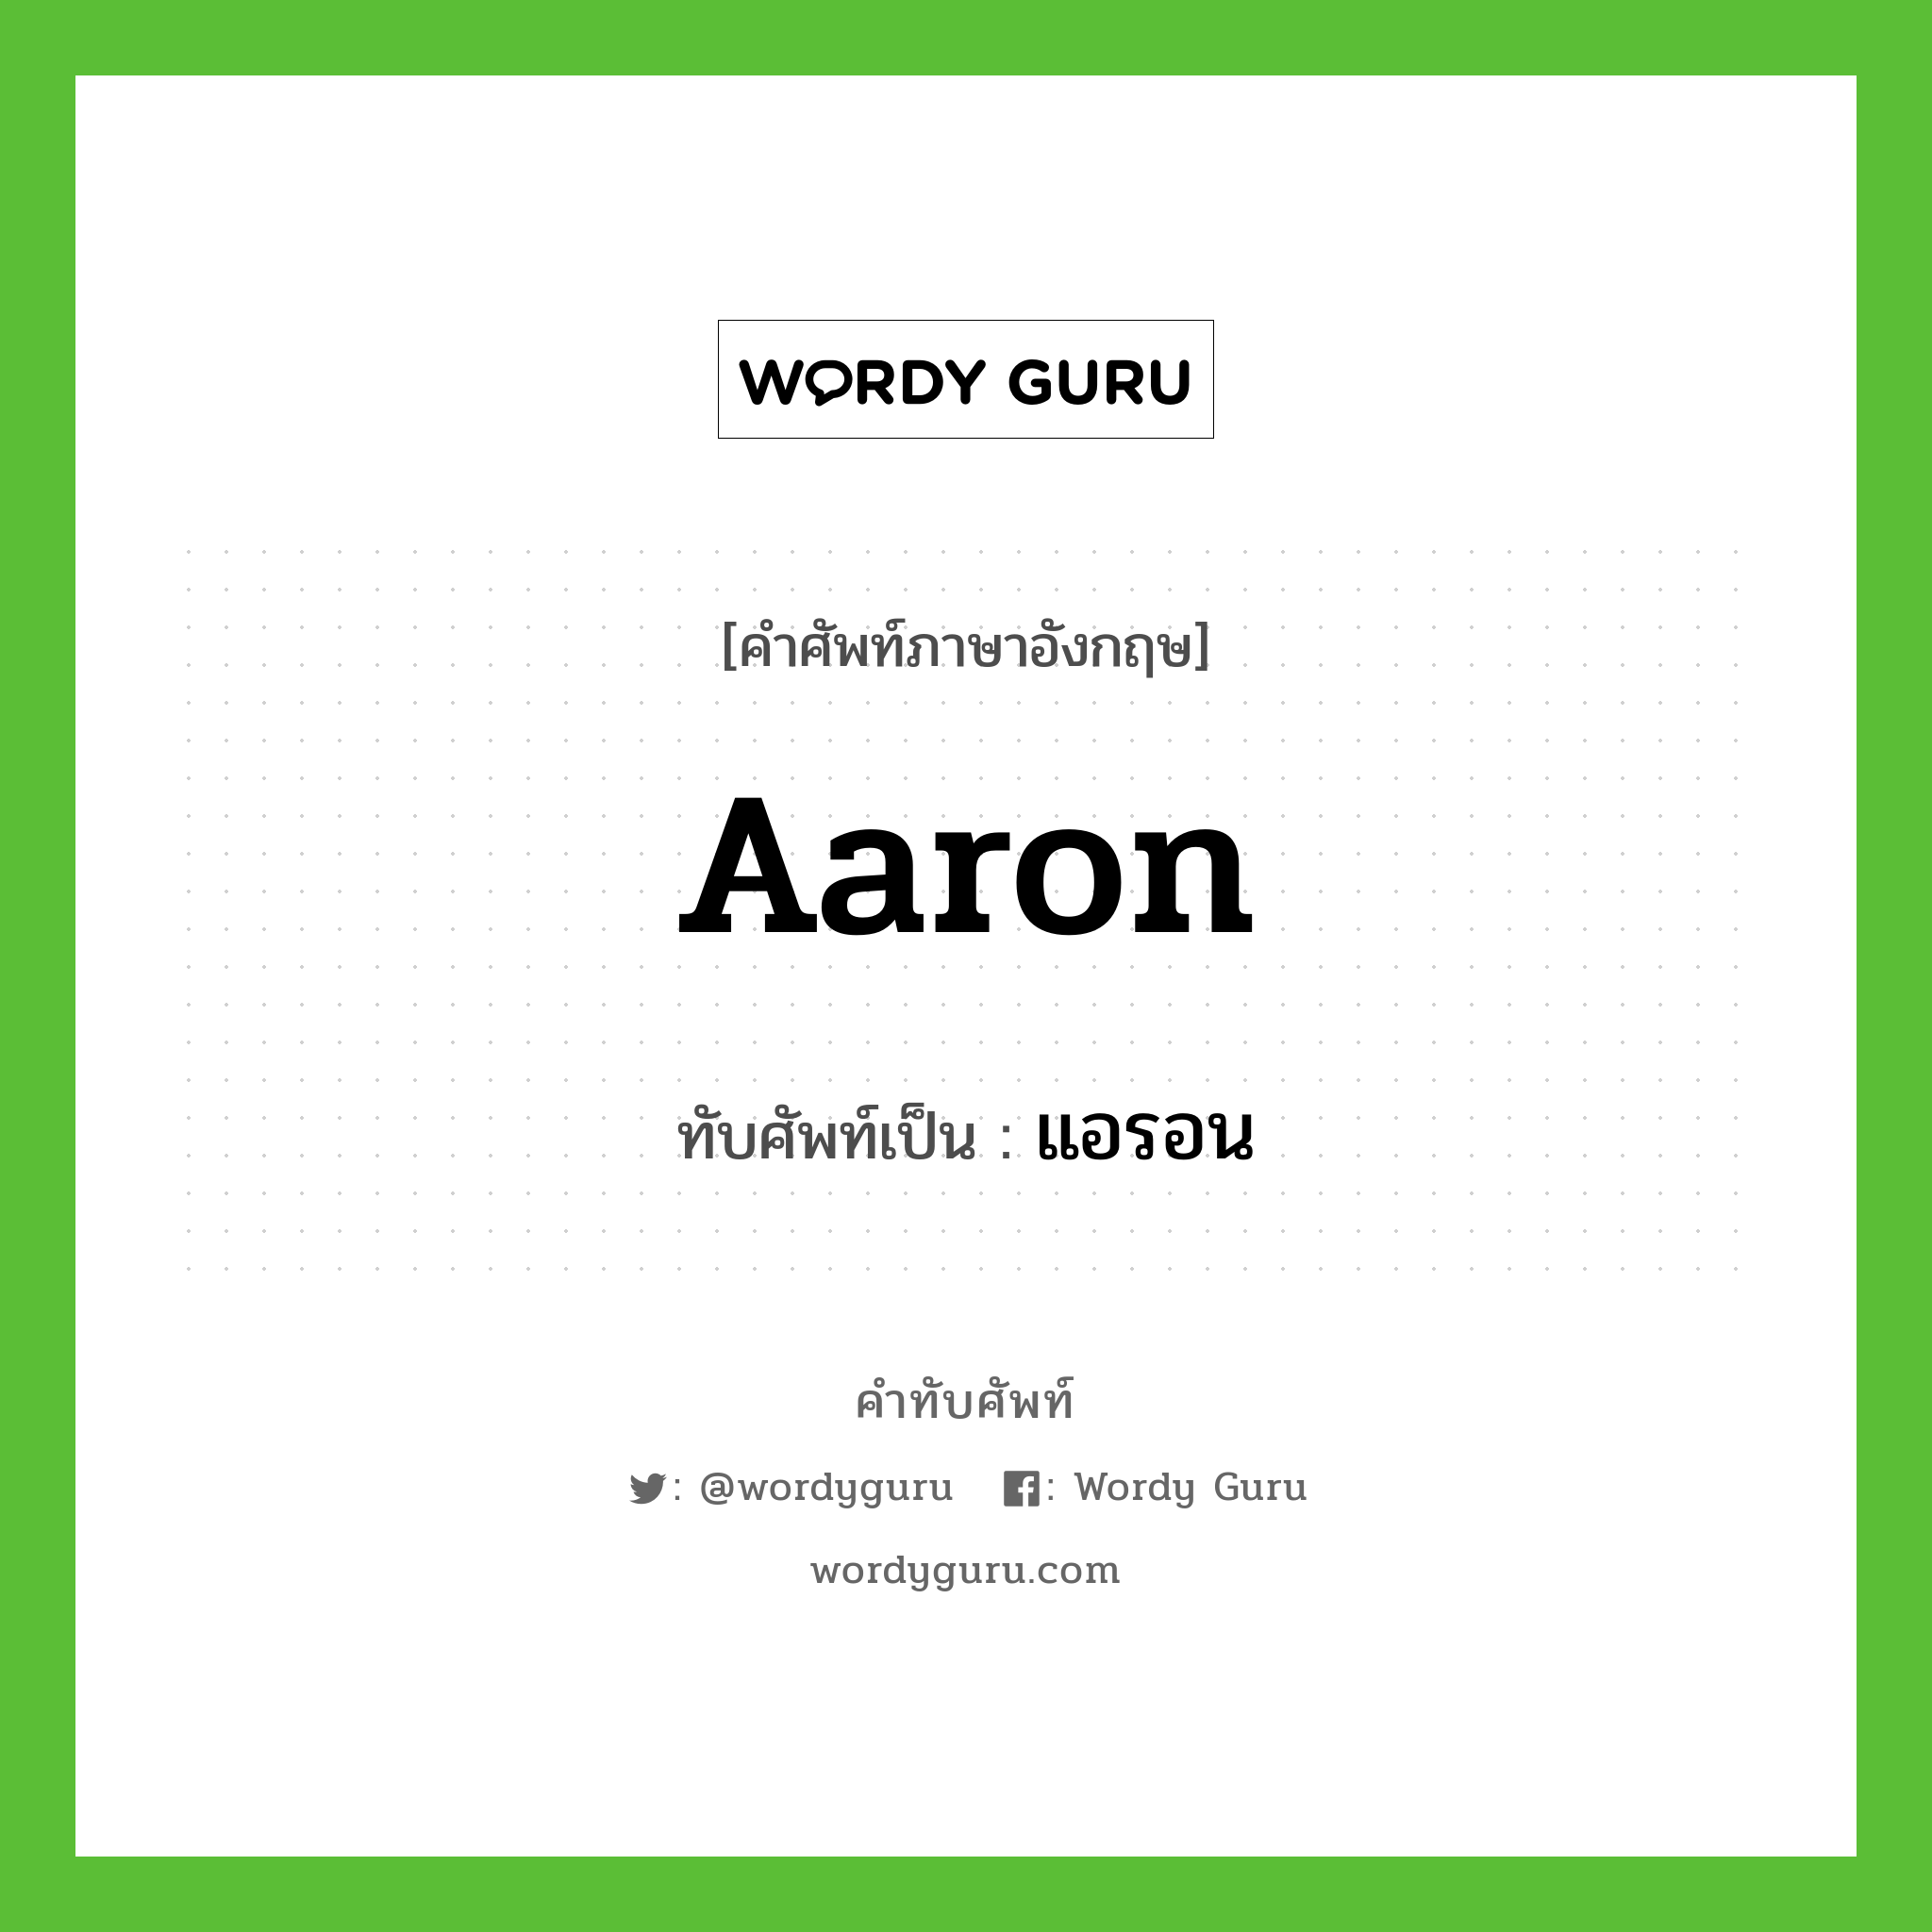 Aaron เขียนเป็นคำไทยว่าอะไร?, คำศัพท์ภาษาอังกฤษ Aaron ทับศัพท์เป็น แอรอน